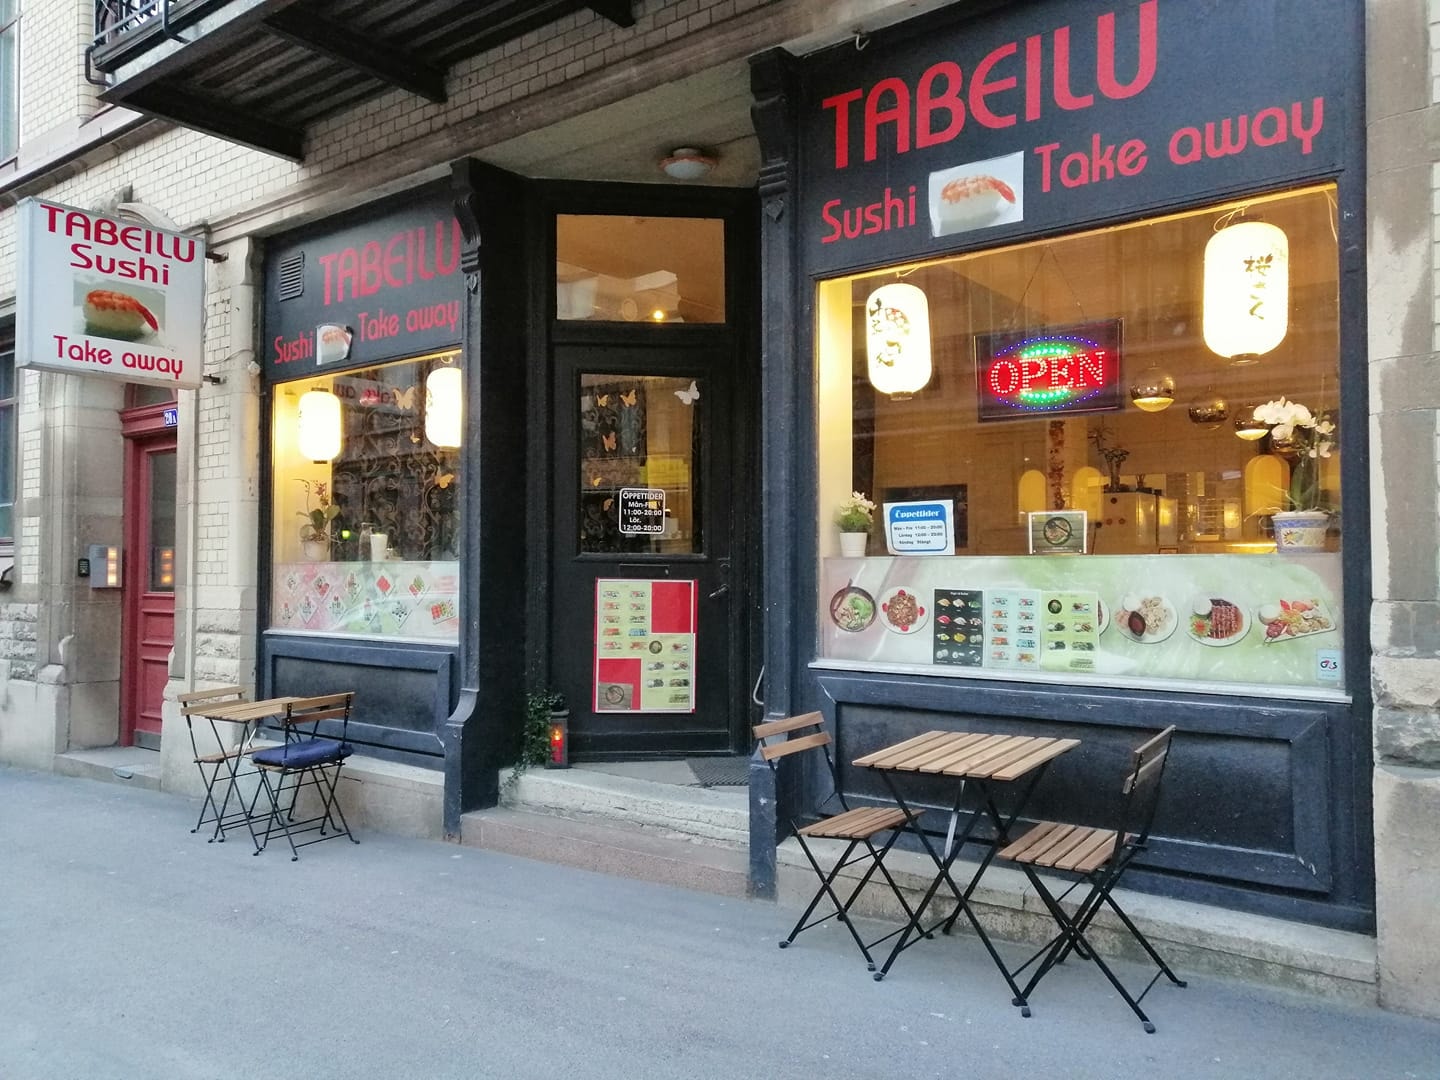 10 bitar sushi från Tabeilu sushi i Vasa (1 av 4)